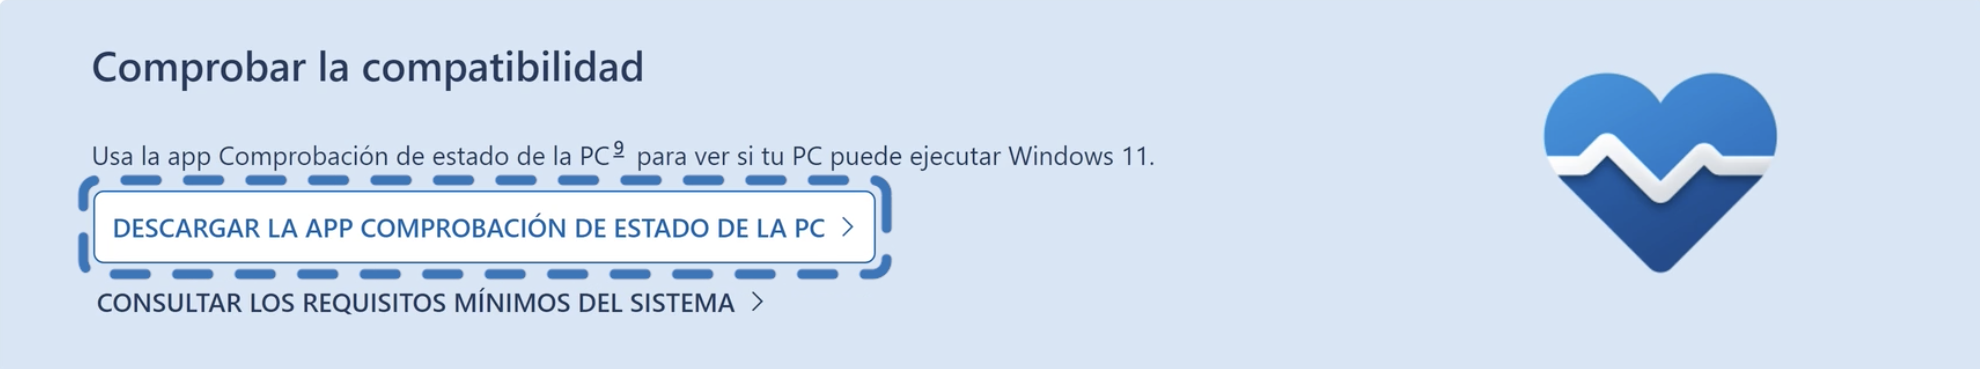 Hacer clic en botón descarga comprobación de pc para Windows 11